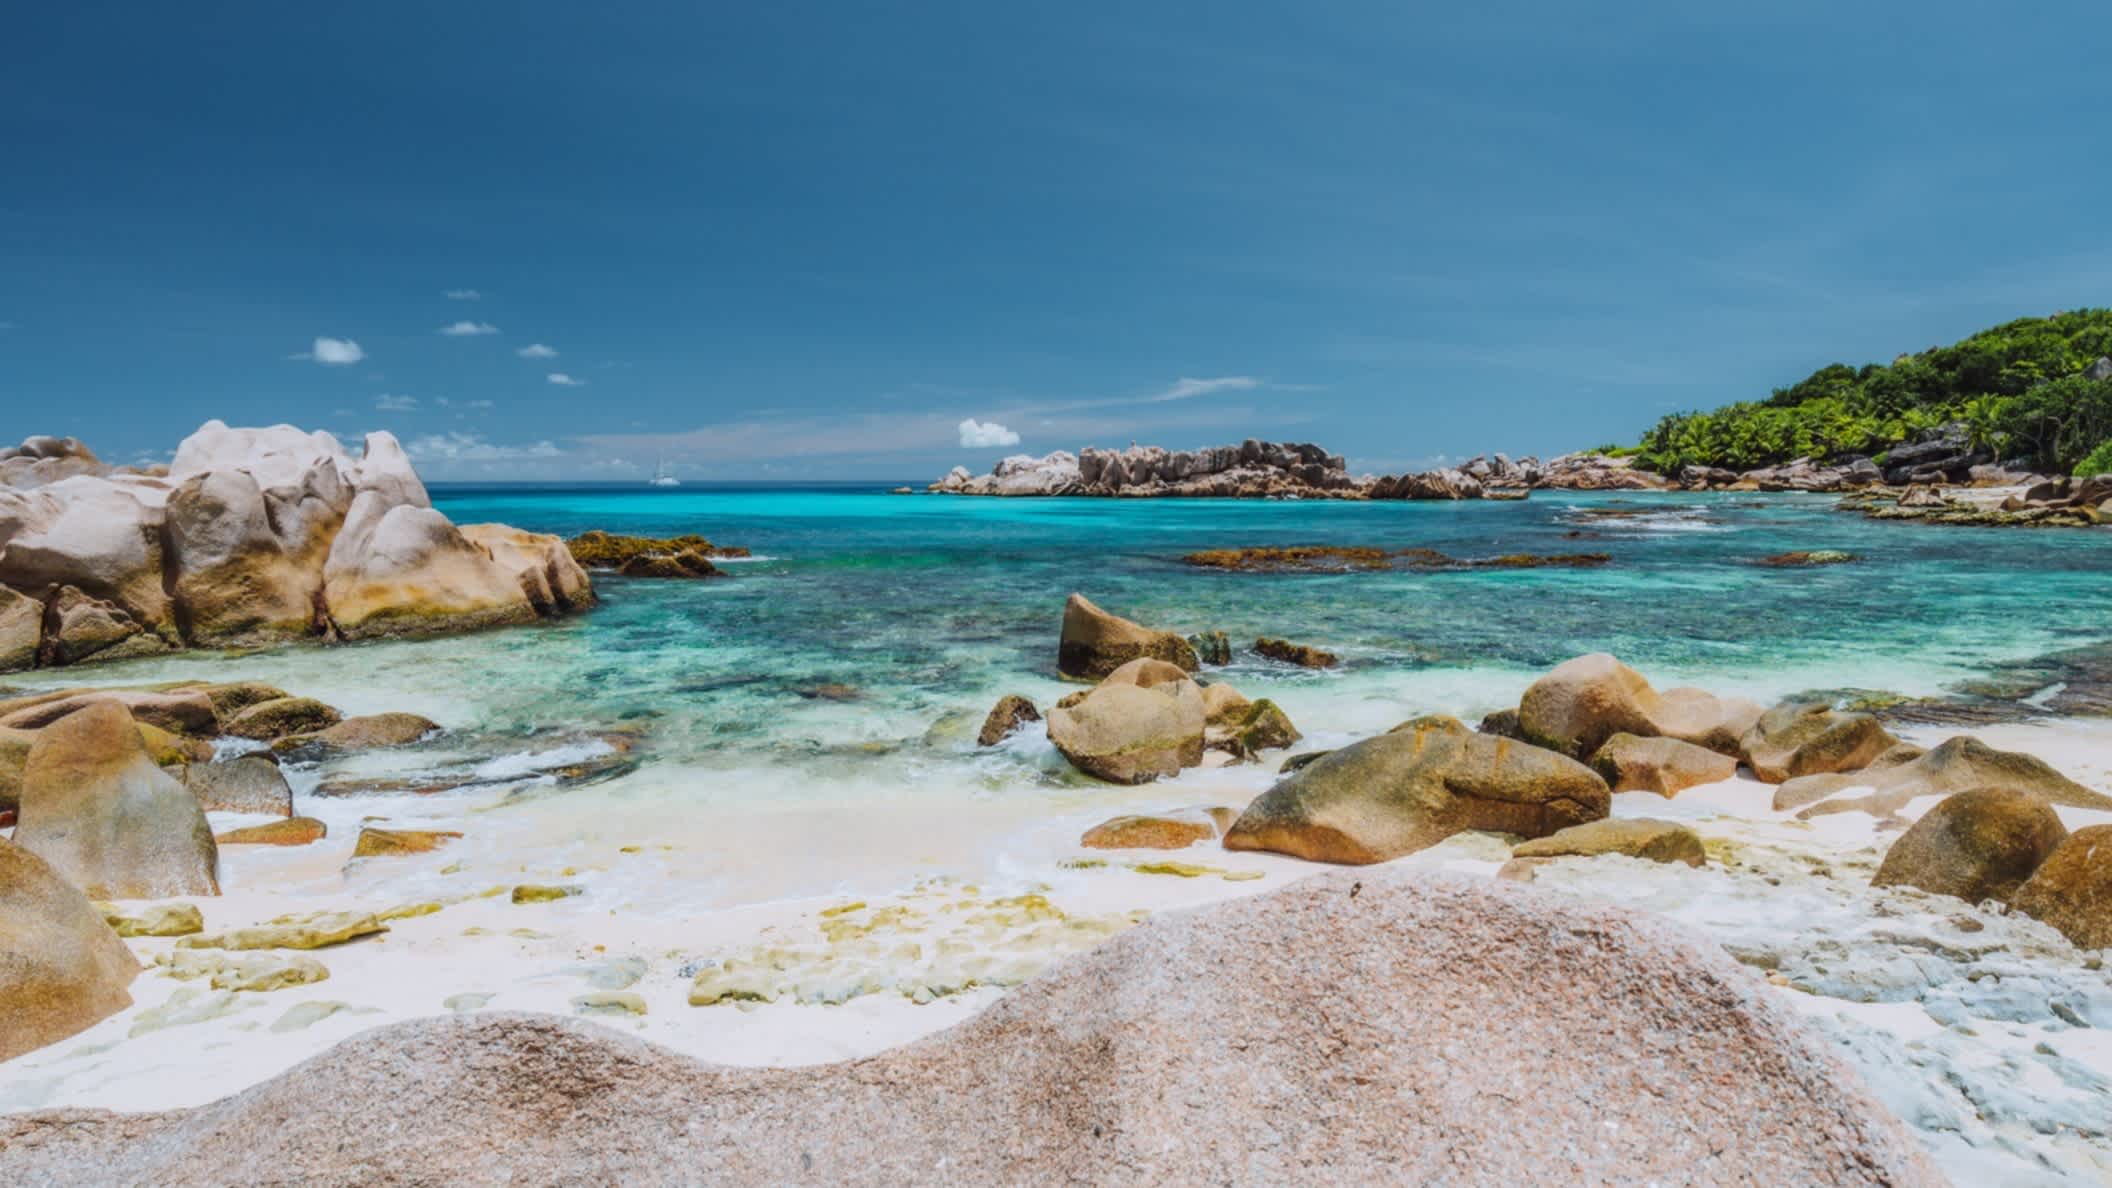 Sonniges Wetter am Anse Cocos Strand auf der Insel La Digue Island, Seychellen mit blauem Meer und typischen Granitfelsen im Bild.